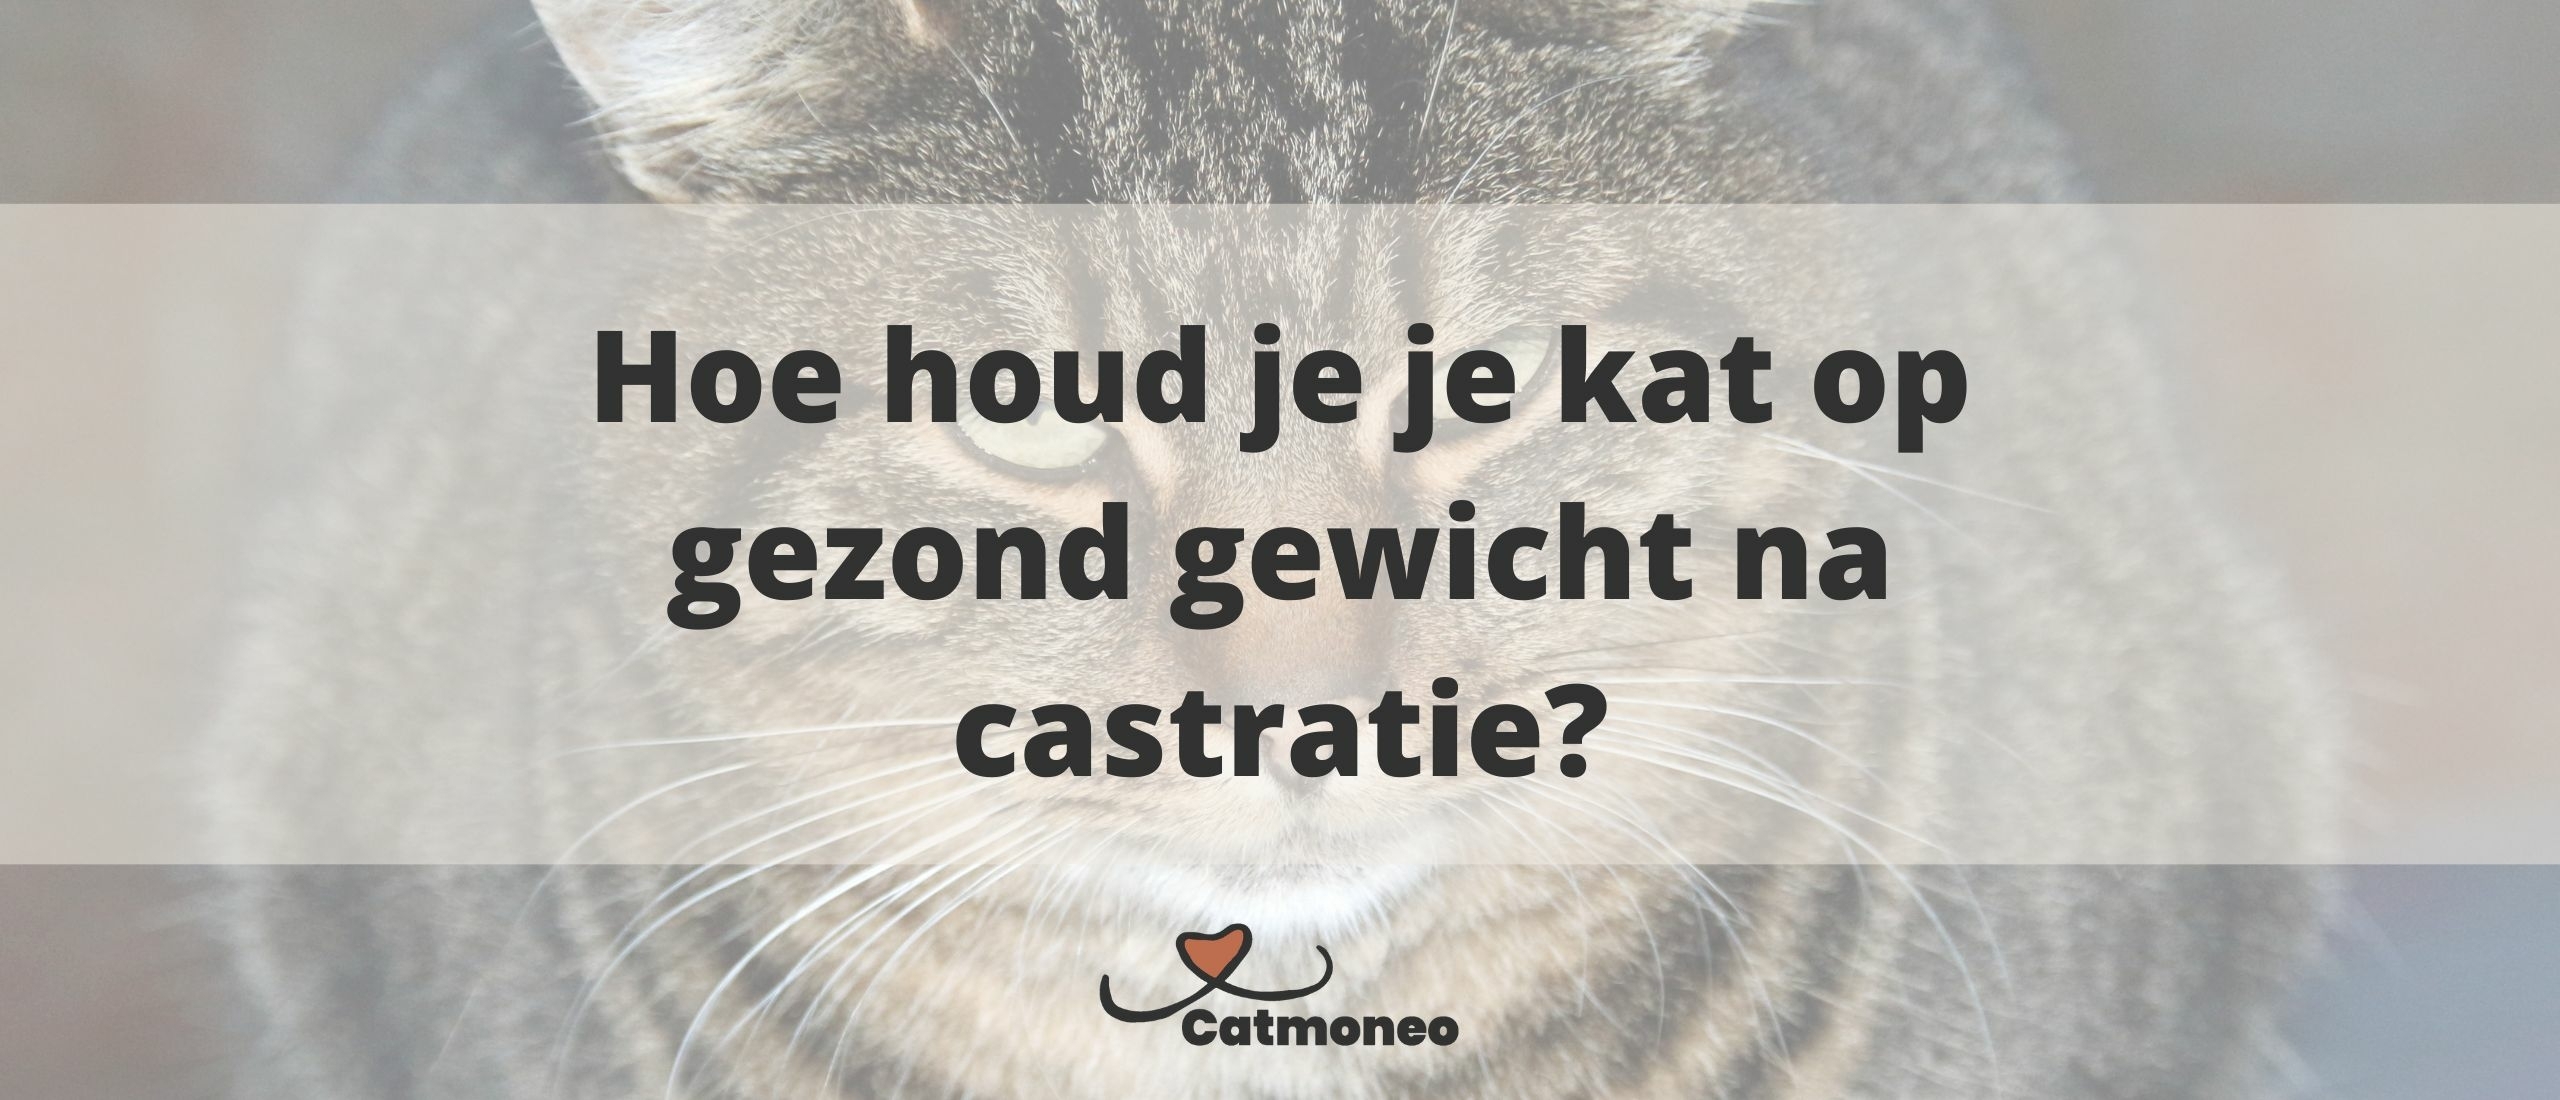 Hoe houd je je kat op gezond gewicht na castratie?